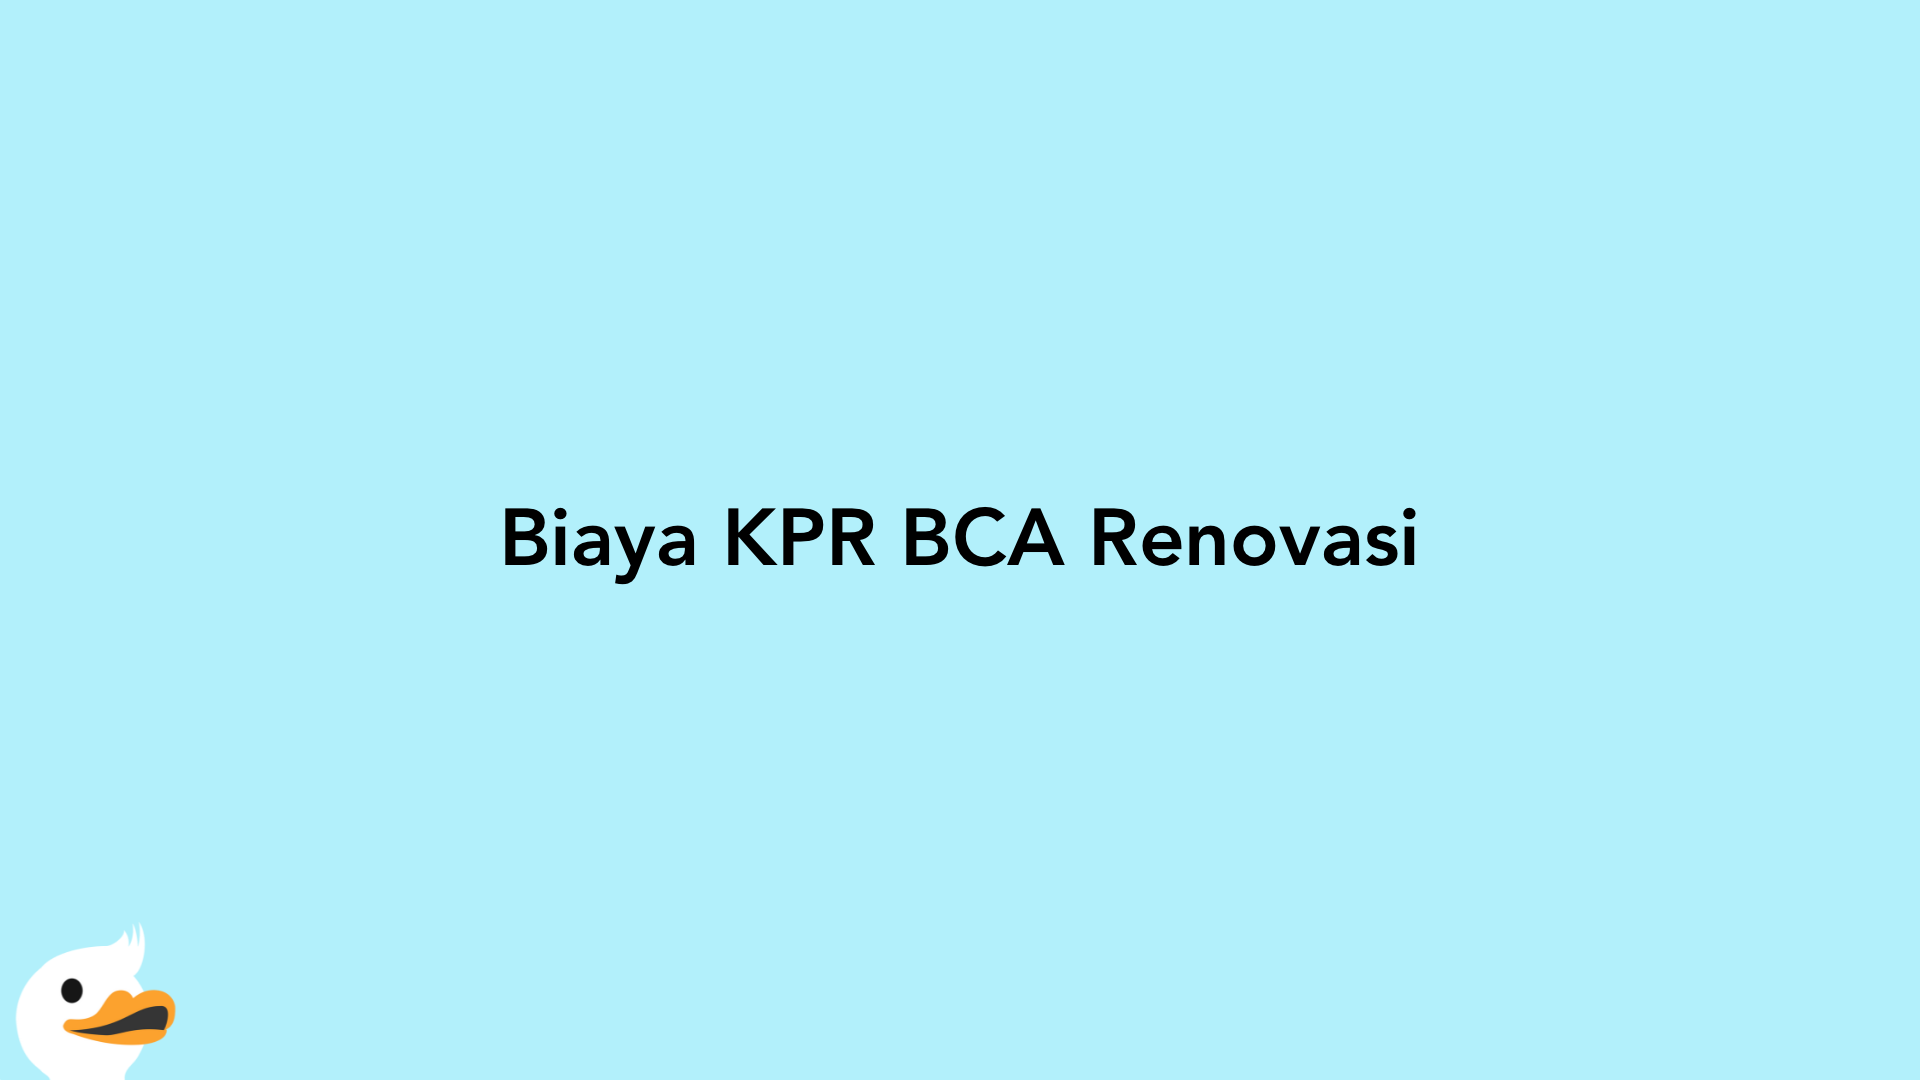 Biaya KPR BCA Renovasi